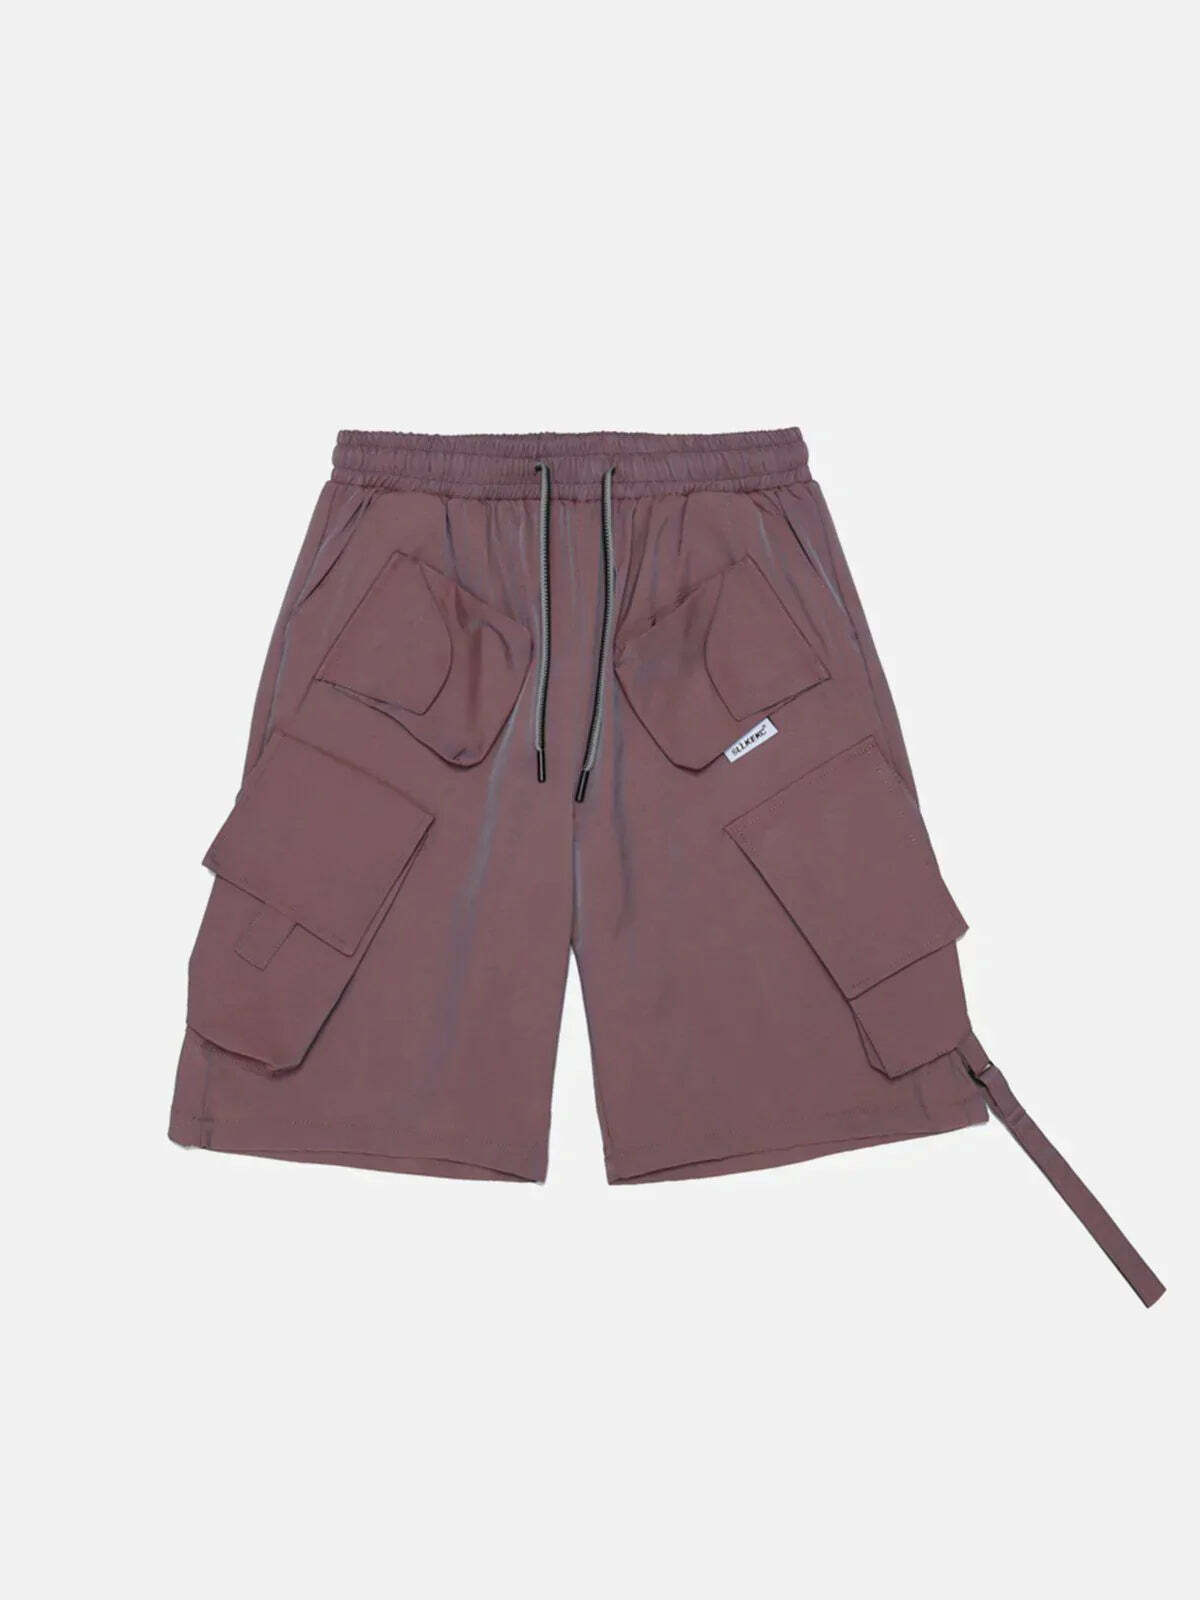 drawstring cargo shorts urban streetwear essential 6274